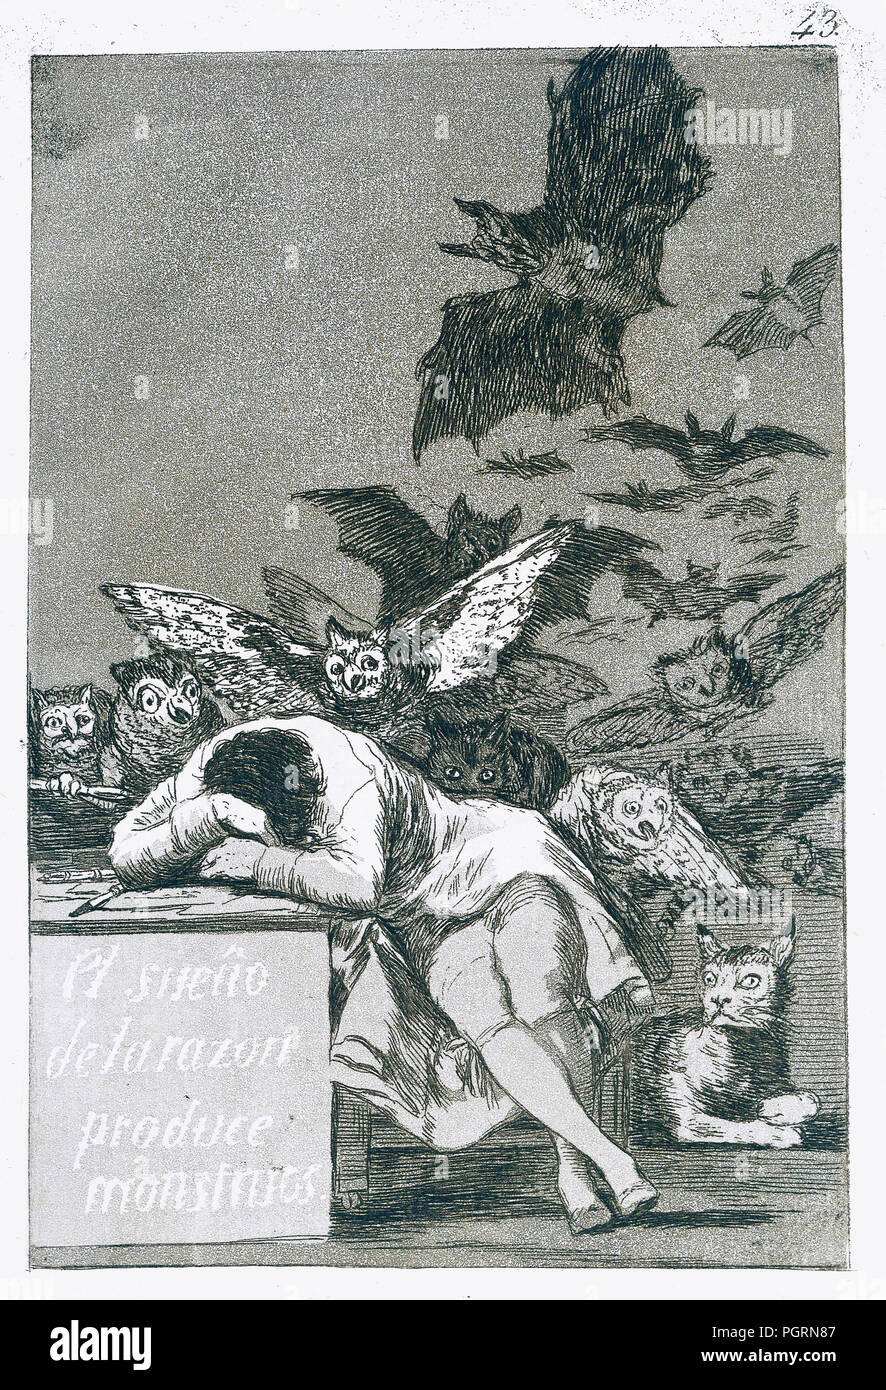 El Sueño de La Razon Produire Monstruos - le rêve de la raison produit des monstres. Par Francisco de Goya, numéro 43 de la série Los Caprichos Banque D'Images